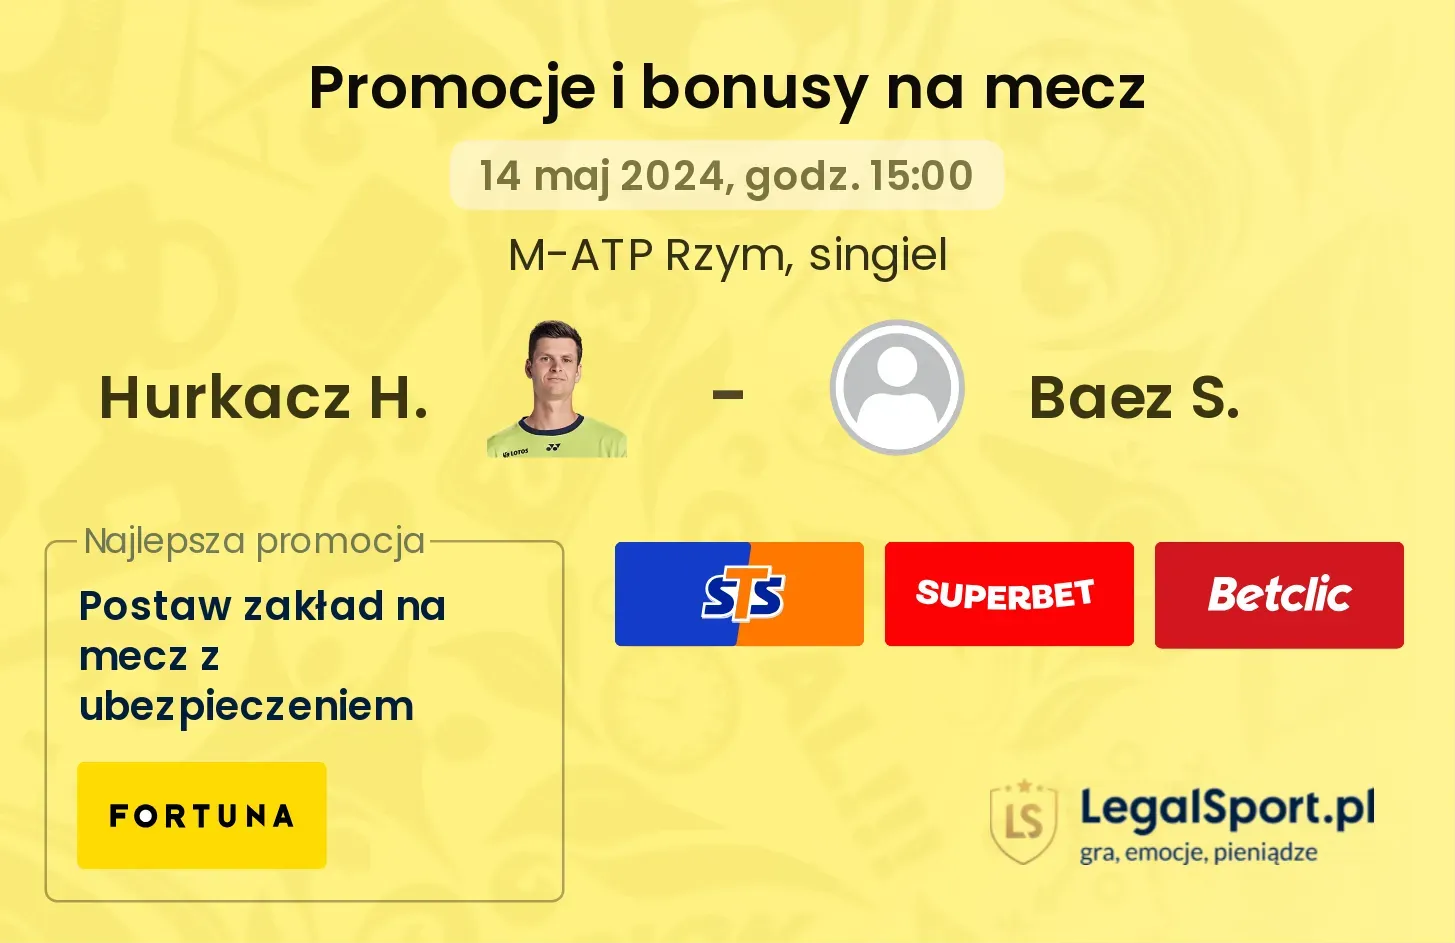 Hurkacz H. - Baez S. bonusy i promocje (14.05, 15:00)